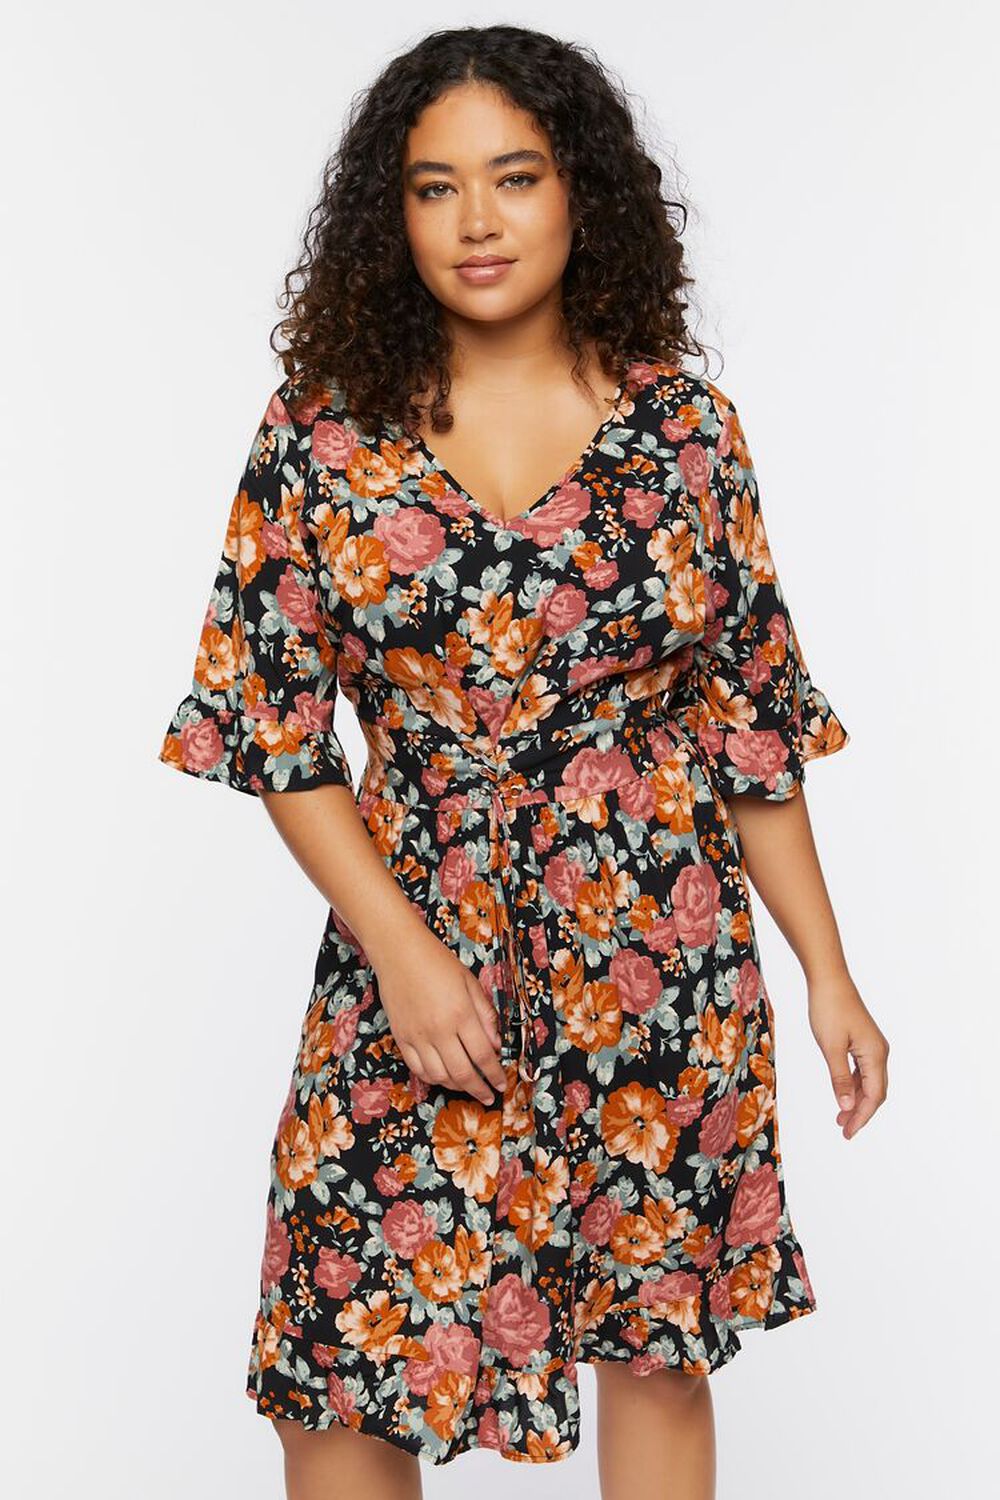 BLACK/MULTI Plus Size Floral Print Mini Dress, image 1